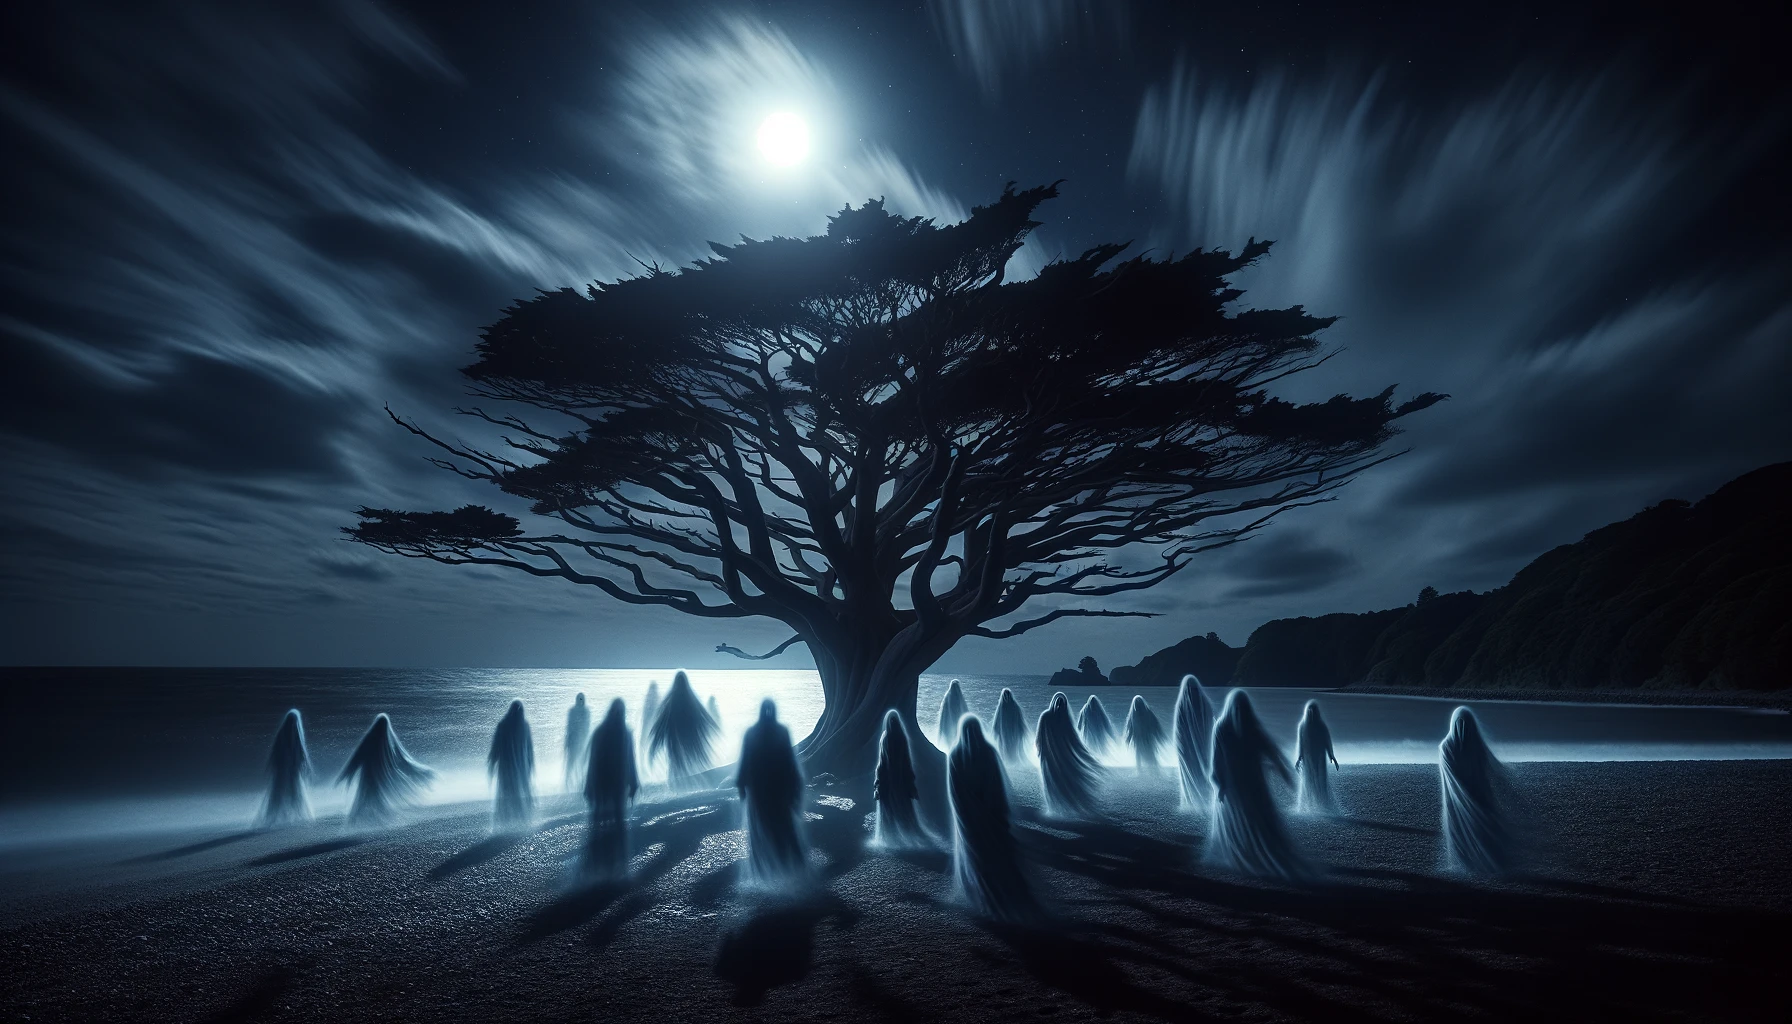 宮崎市青島の荒涼とした海岸に立つ呪われた木。月光に照らされ、周囲には幽霊のような人物の姿が見える、不気味な夜のシーン。